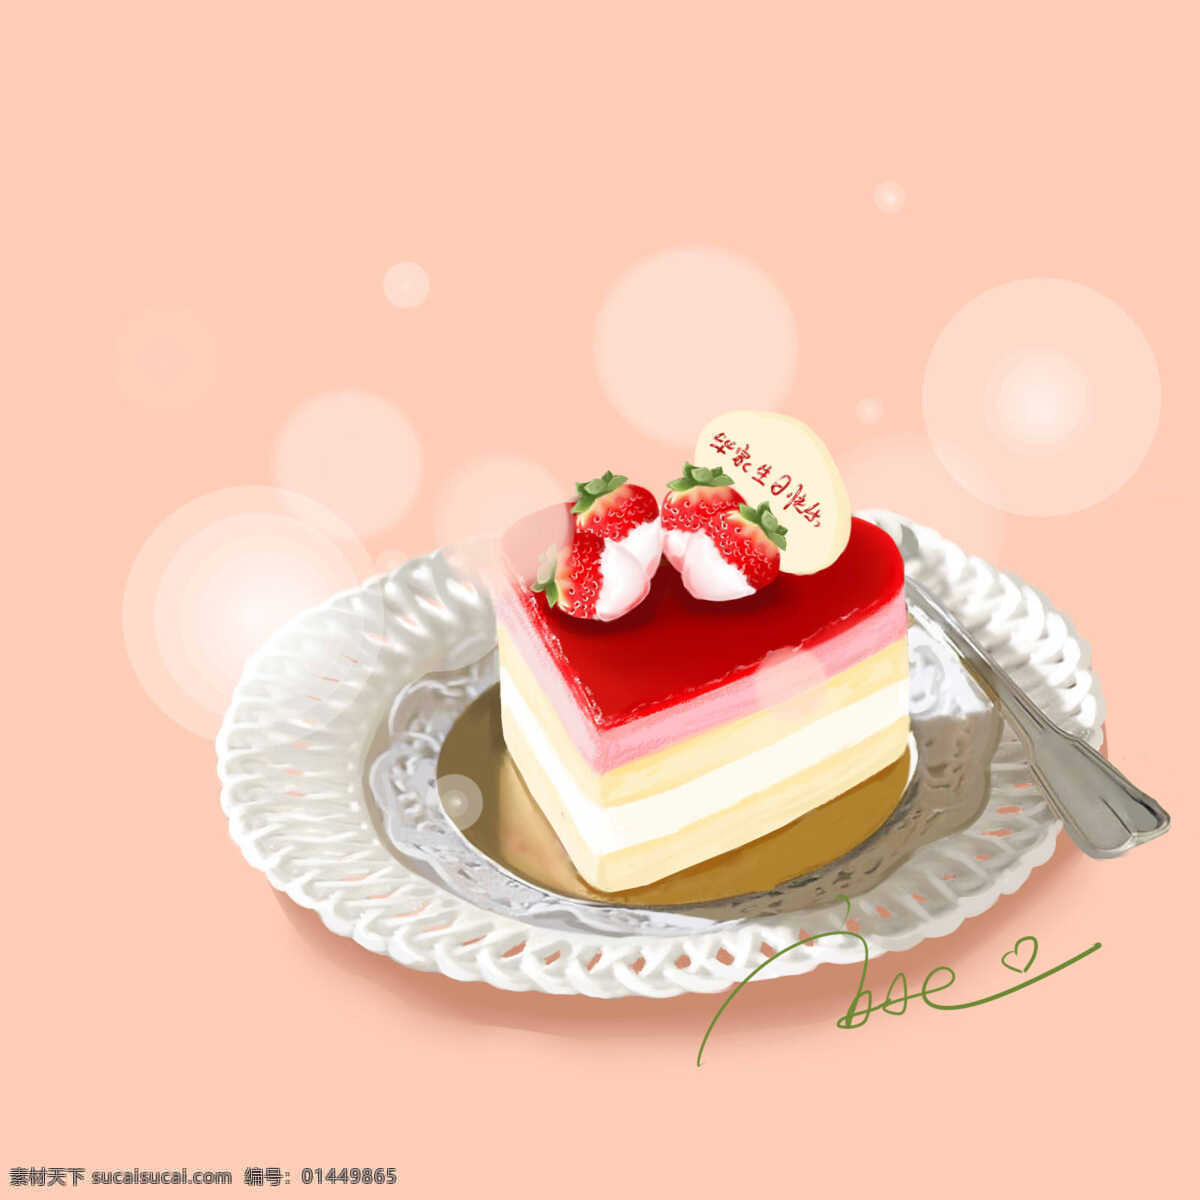 生日蛋糕 餐饮美食 蛋糕 卡通 生活百科 生日 手绘 心型 psd源文件 餐饮素材